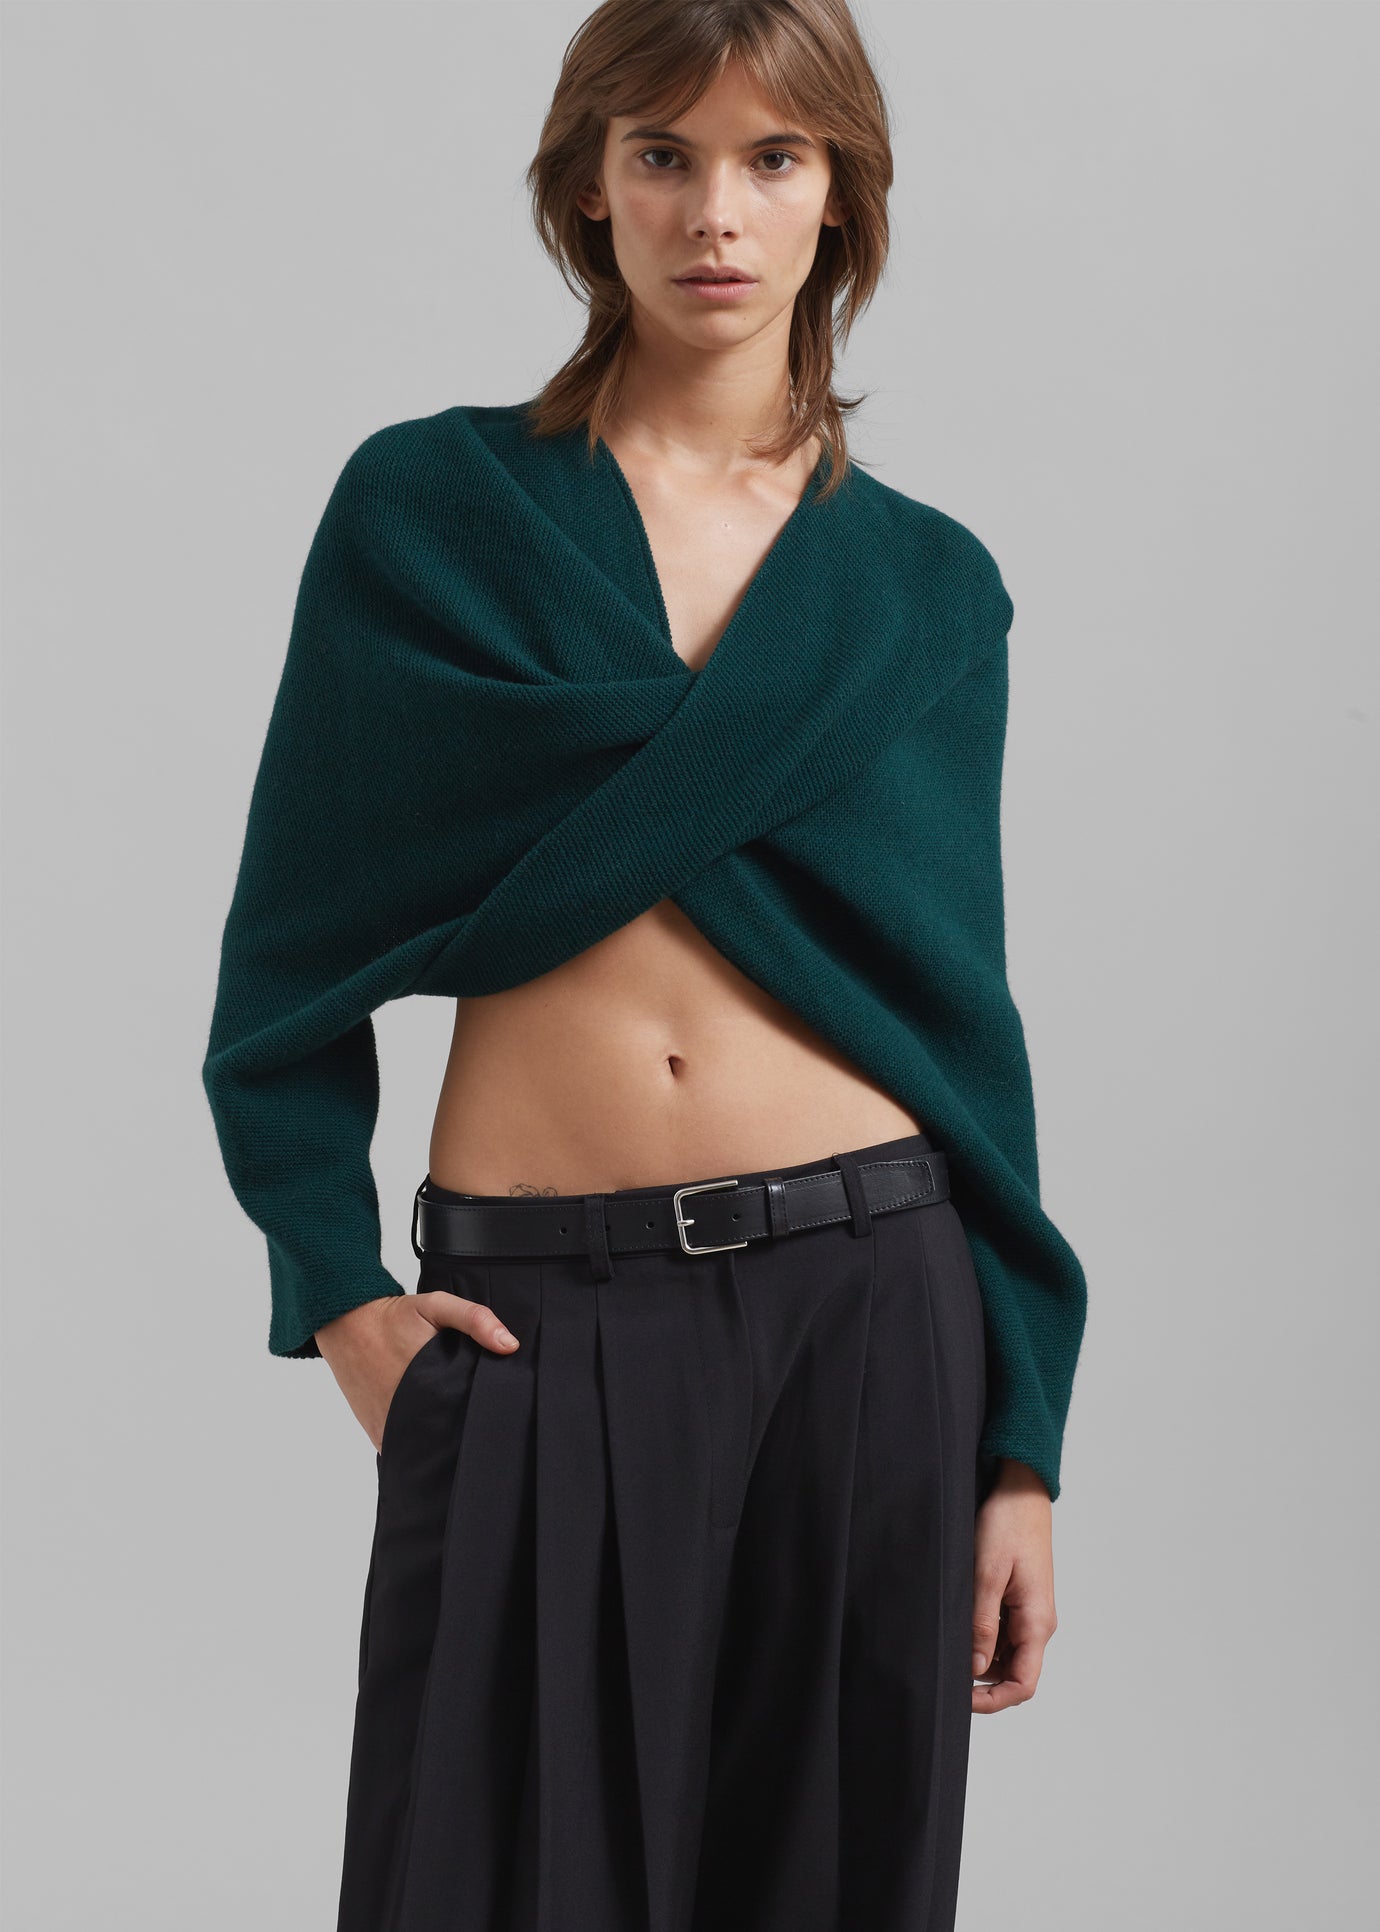 Beaufille Twist Sweater - Emerald